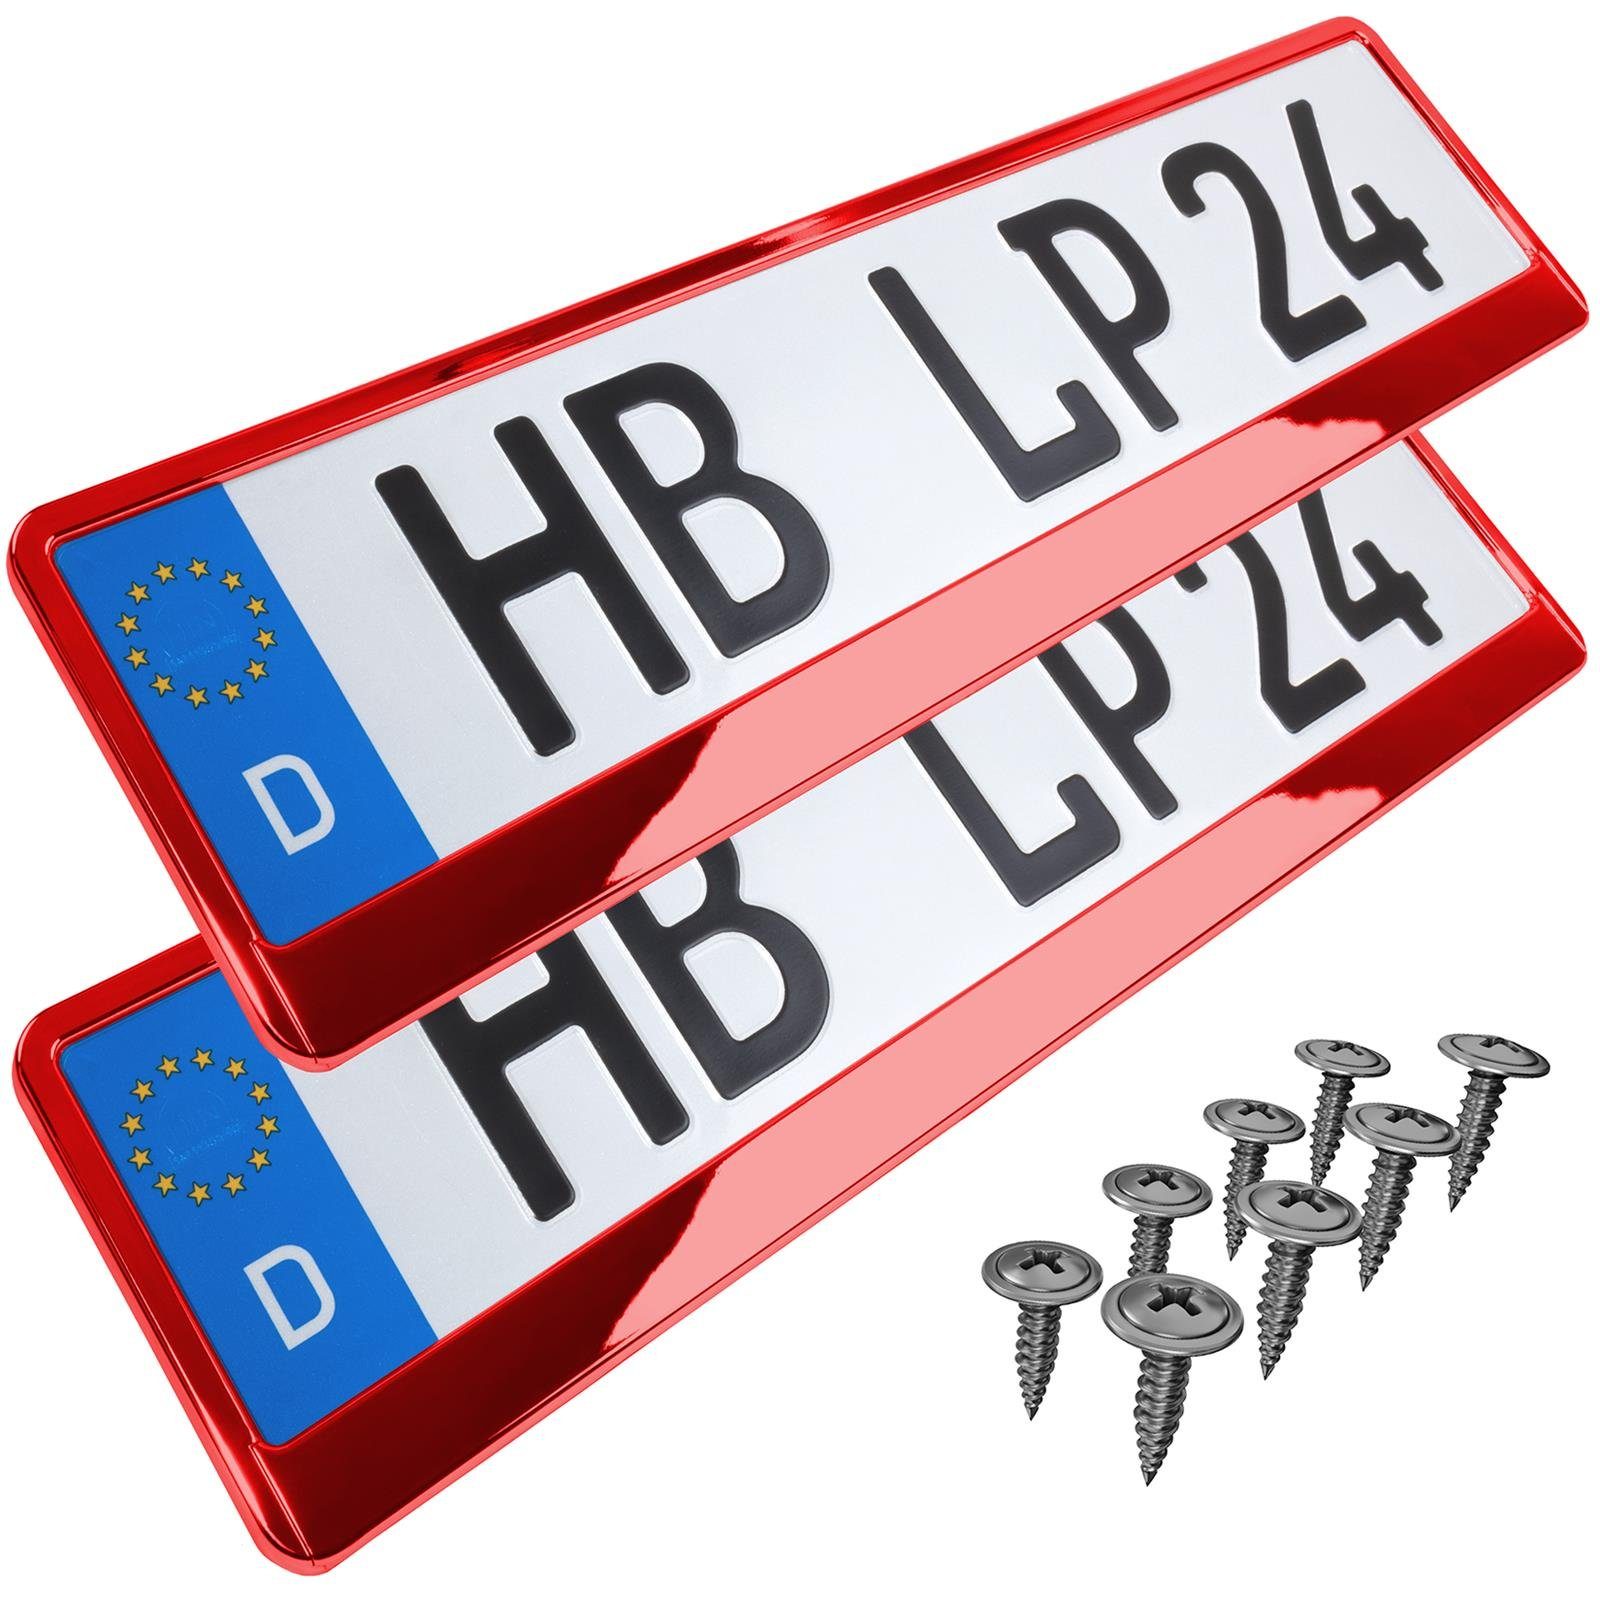 L & P Car Design Kennzeichenhalter für Auto in Rot-Chrom  Kennzeichenhalterung, (2 Stück)